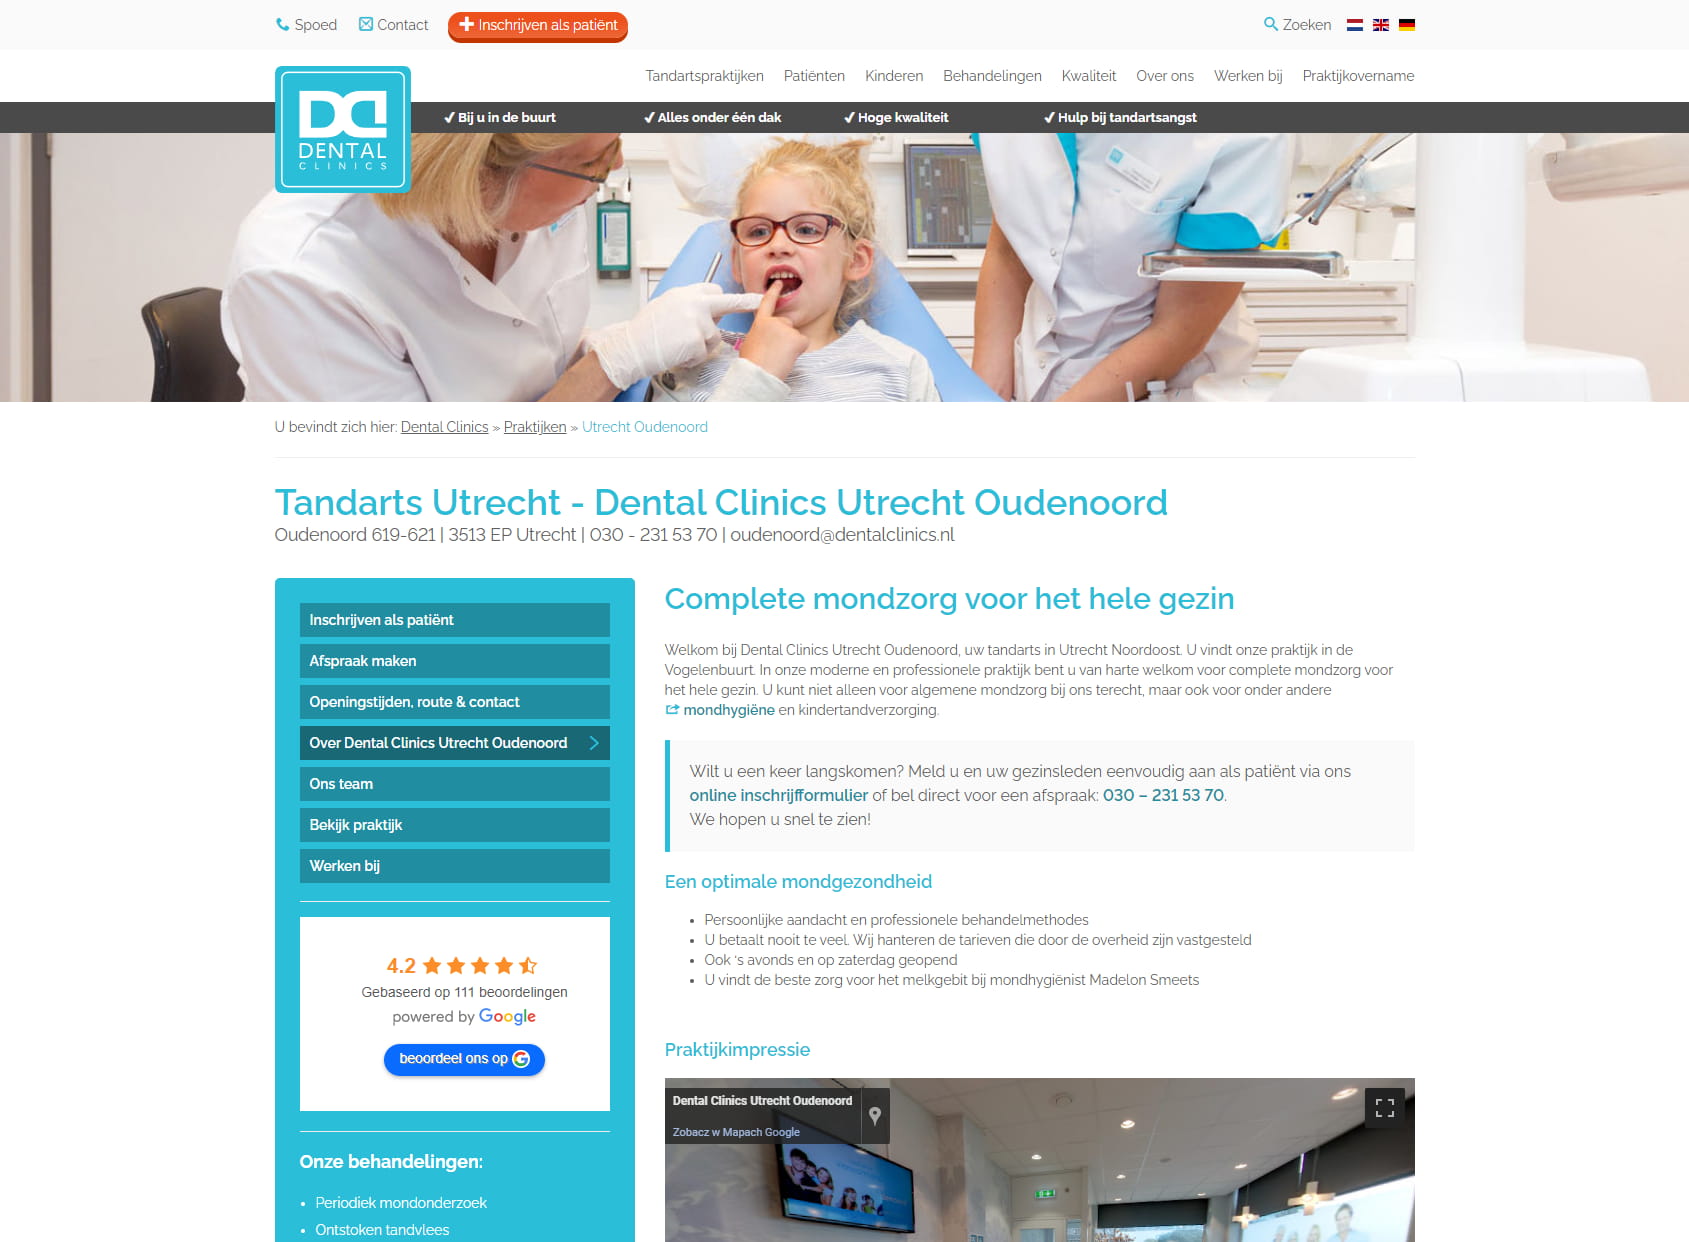 Dental Clinics Utrecht Oudenoord